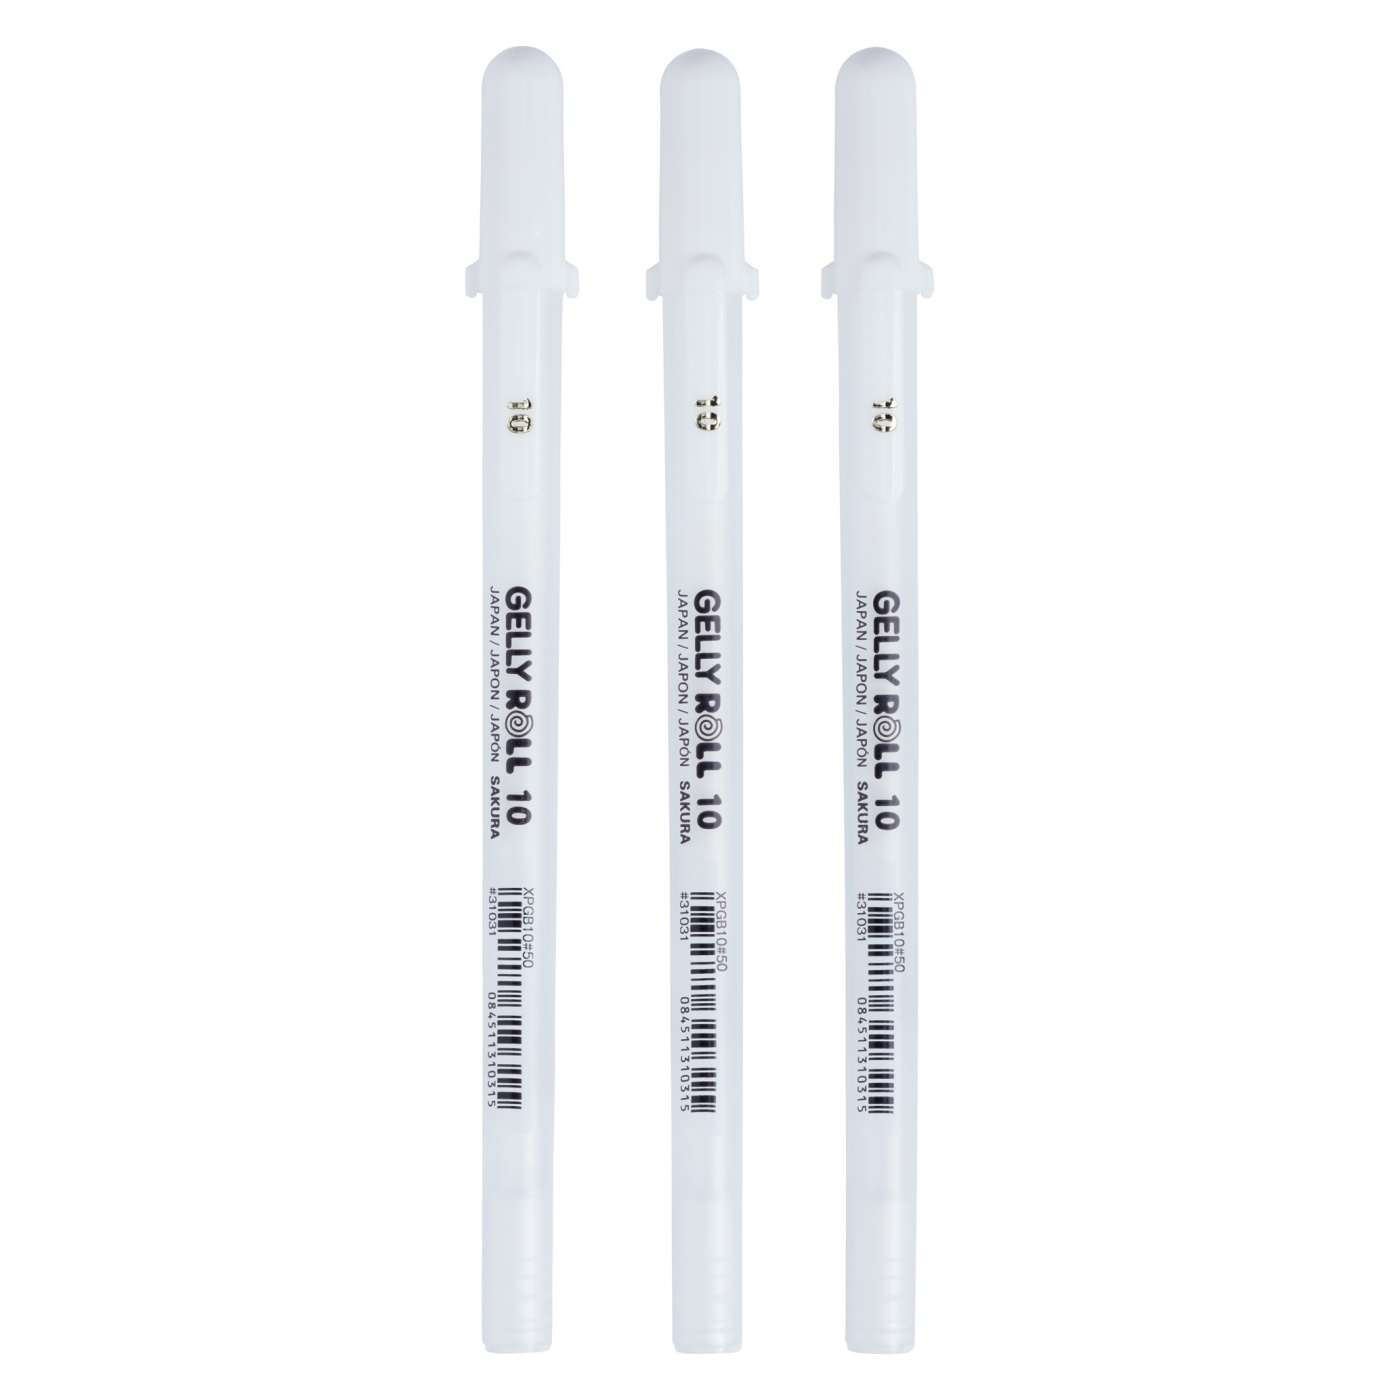 White - Gelly Roll Classic Bold Point Pens 6/Pkg - Sakura